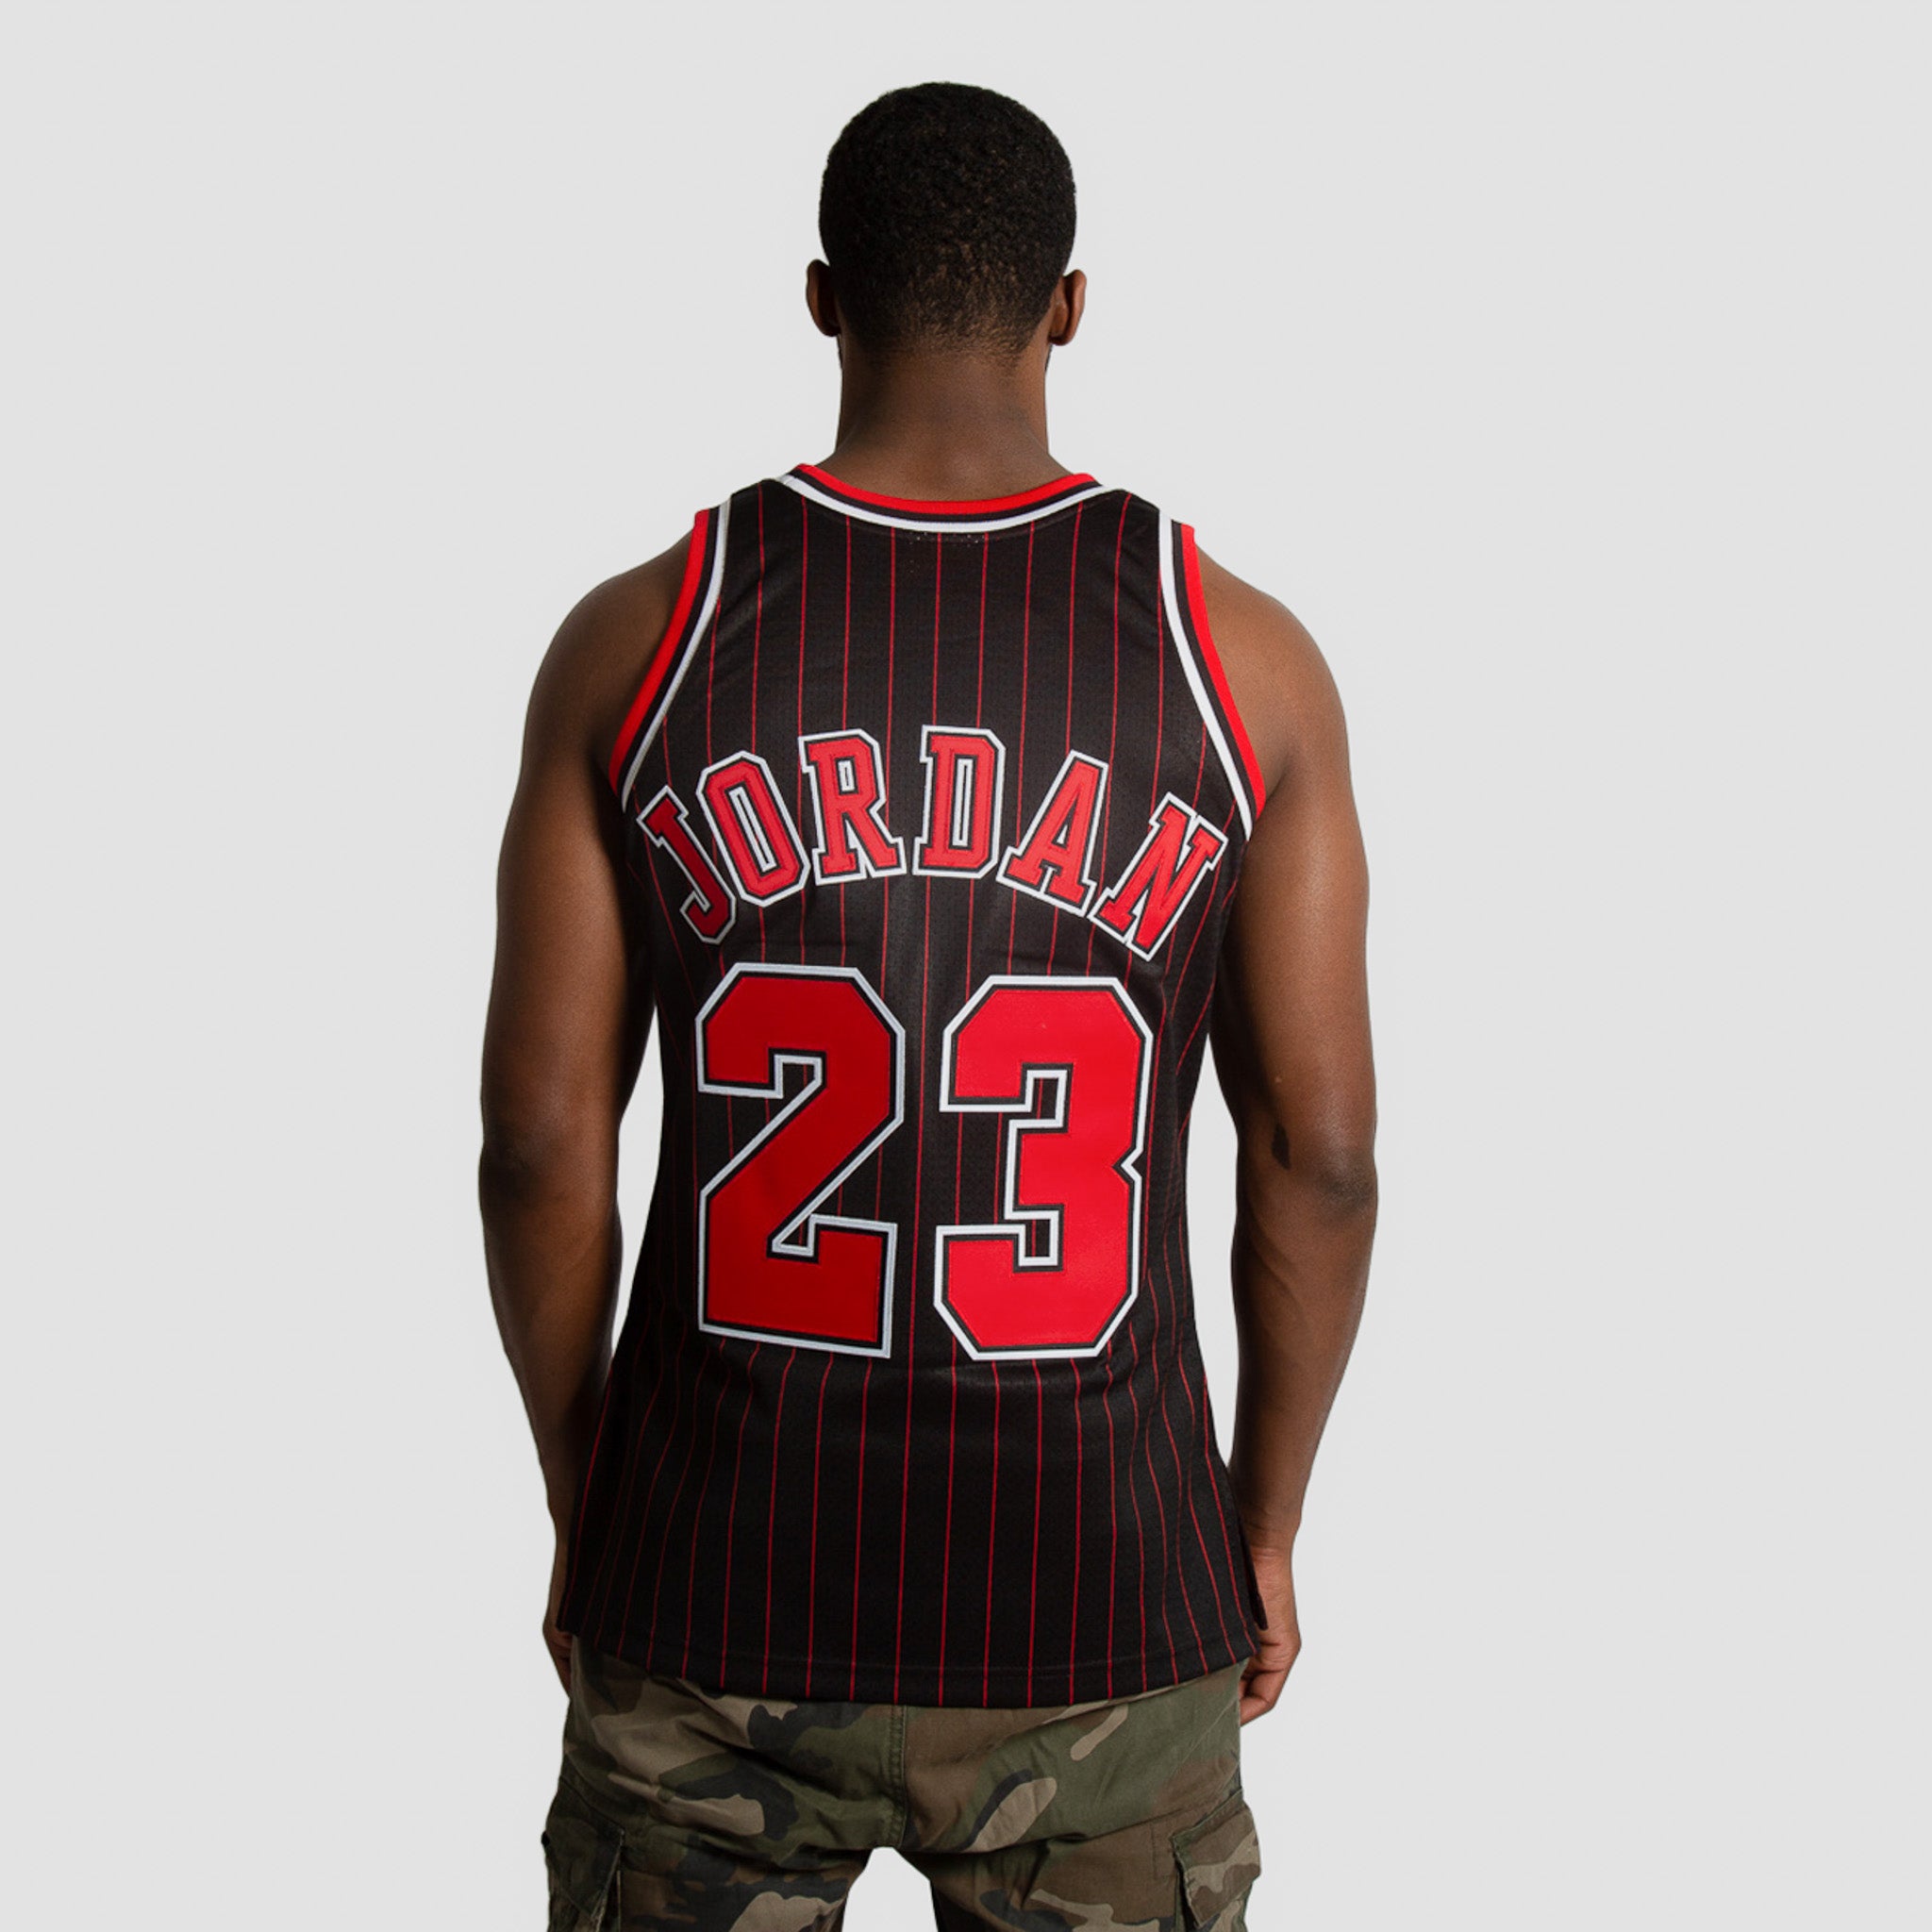 Stitched NBA Chicago Bulls Michael Jordan Jersey Basketball Shorts SIZE  X-Large